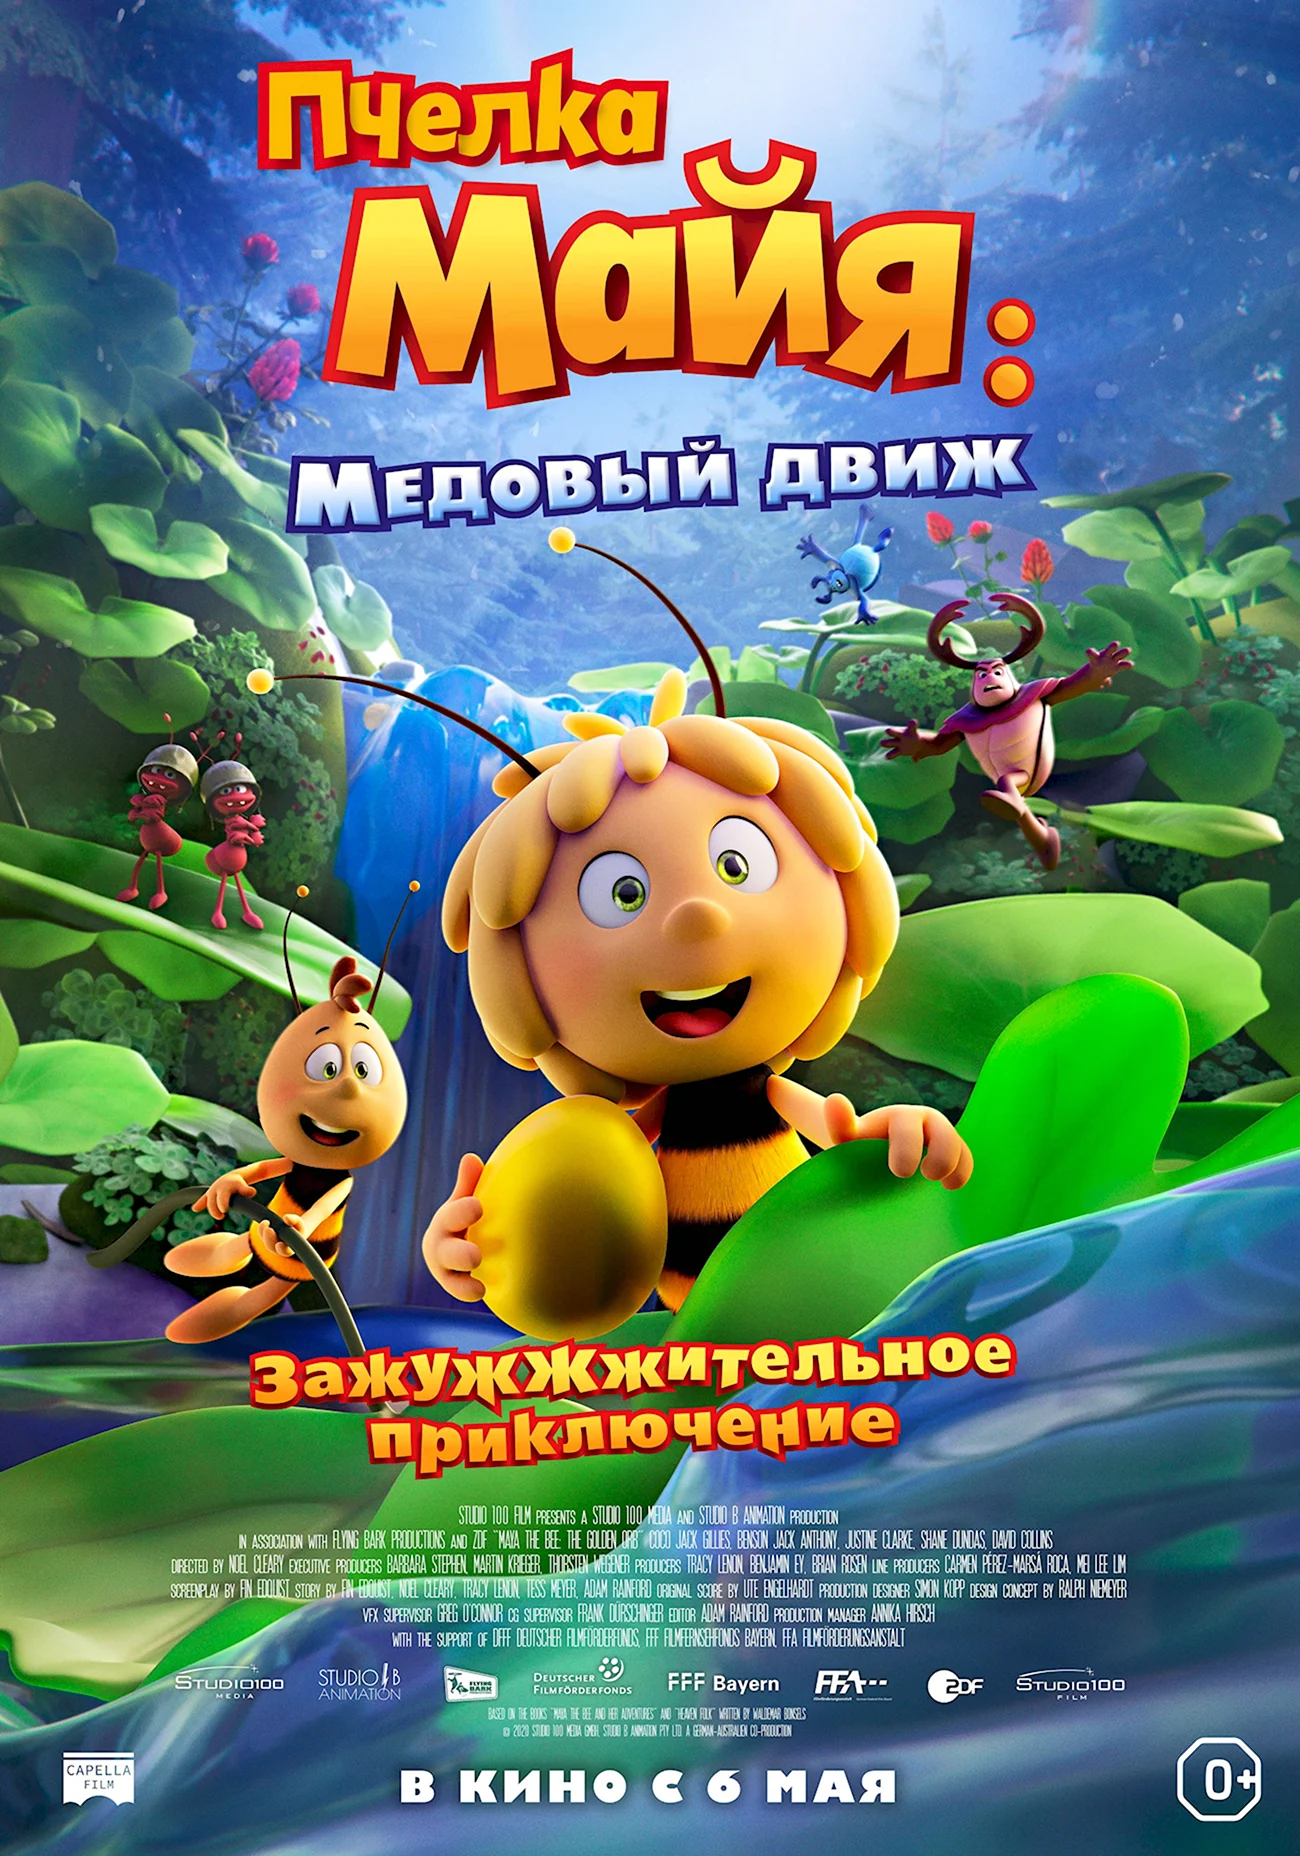 Пчелка Майя медовый движ мультфильм 2021. Картинка из мультфильма